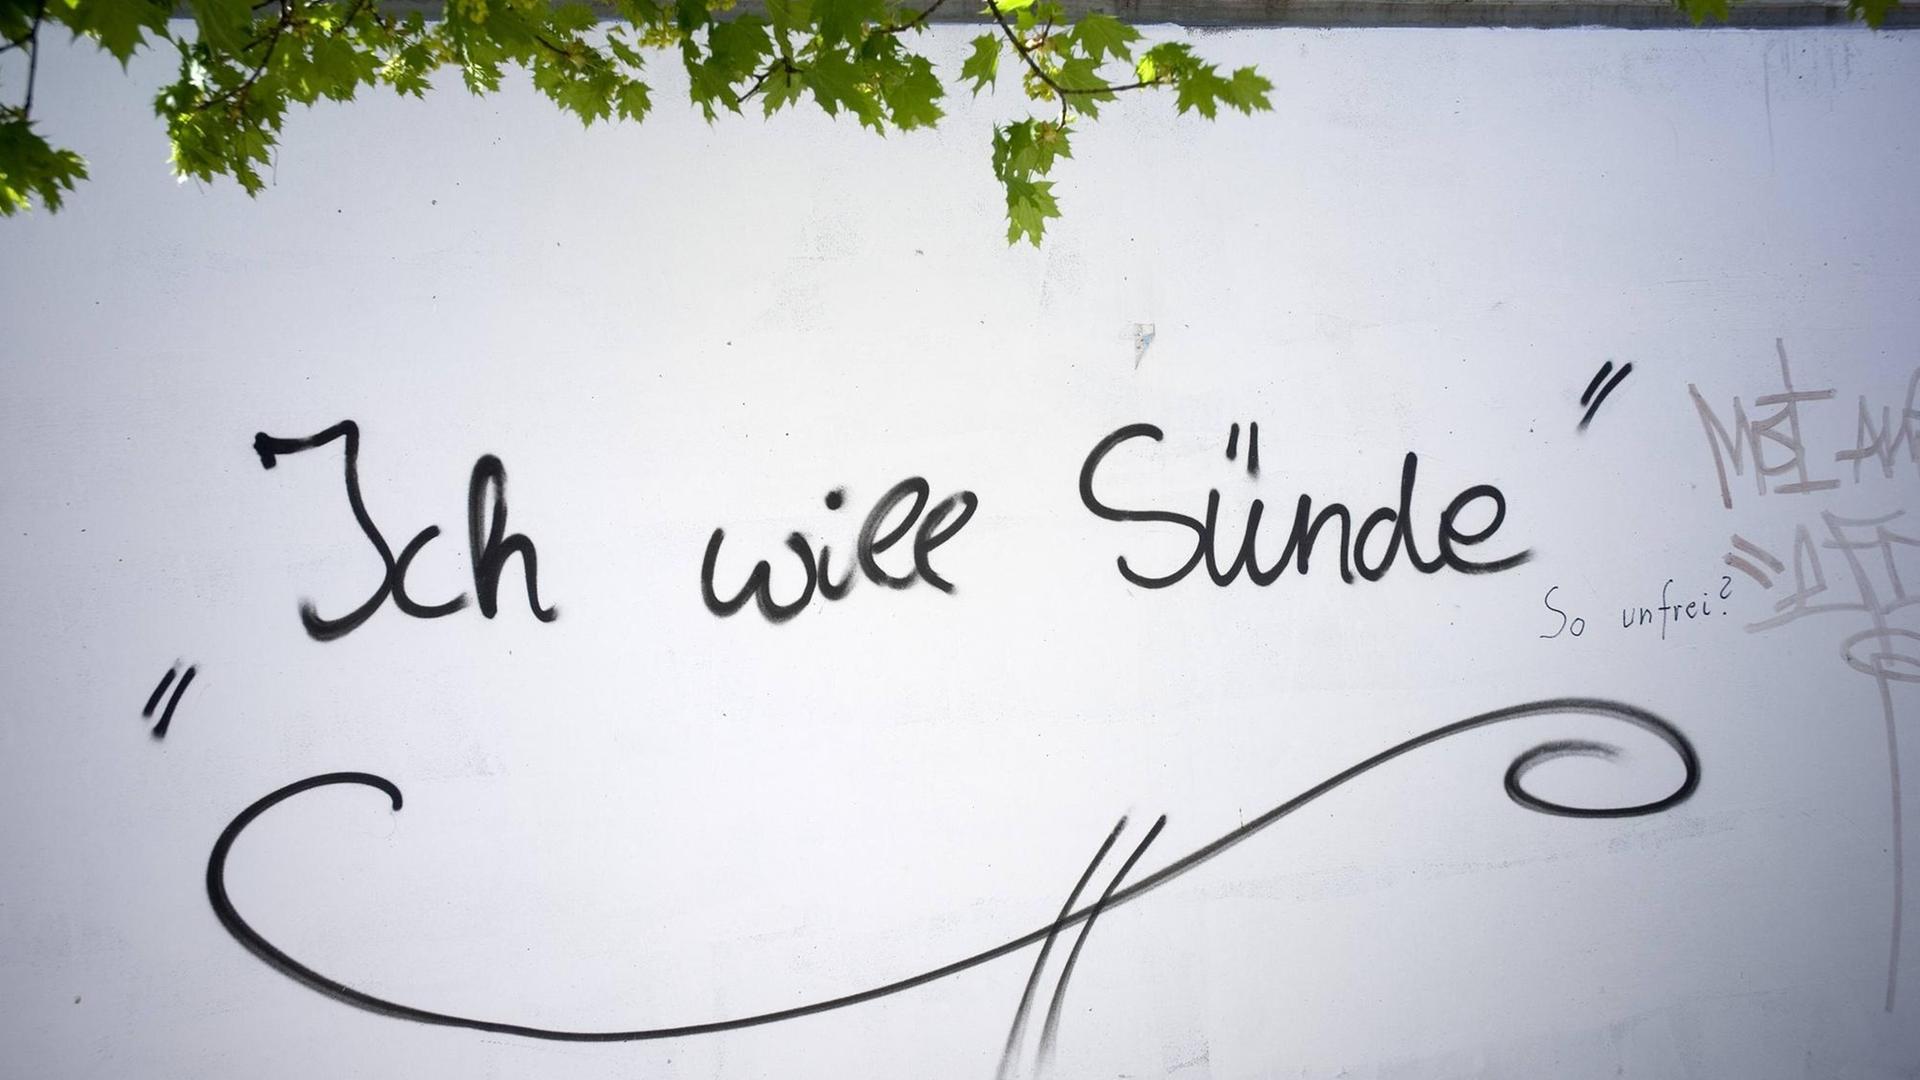 Der Schriftzug "Ich will Sünde!" ist auf eine Mauer gesprüht.